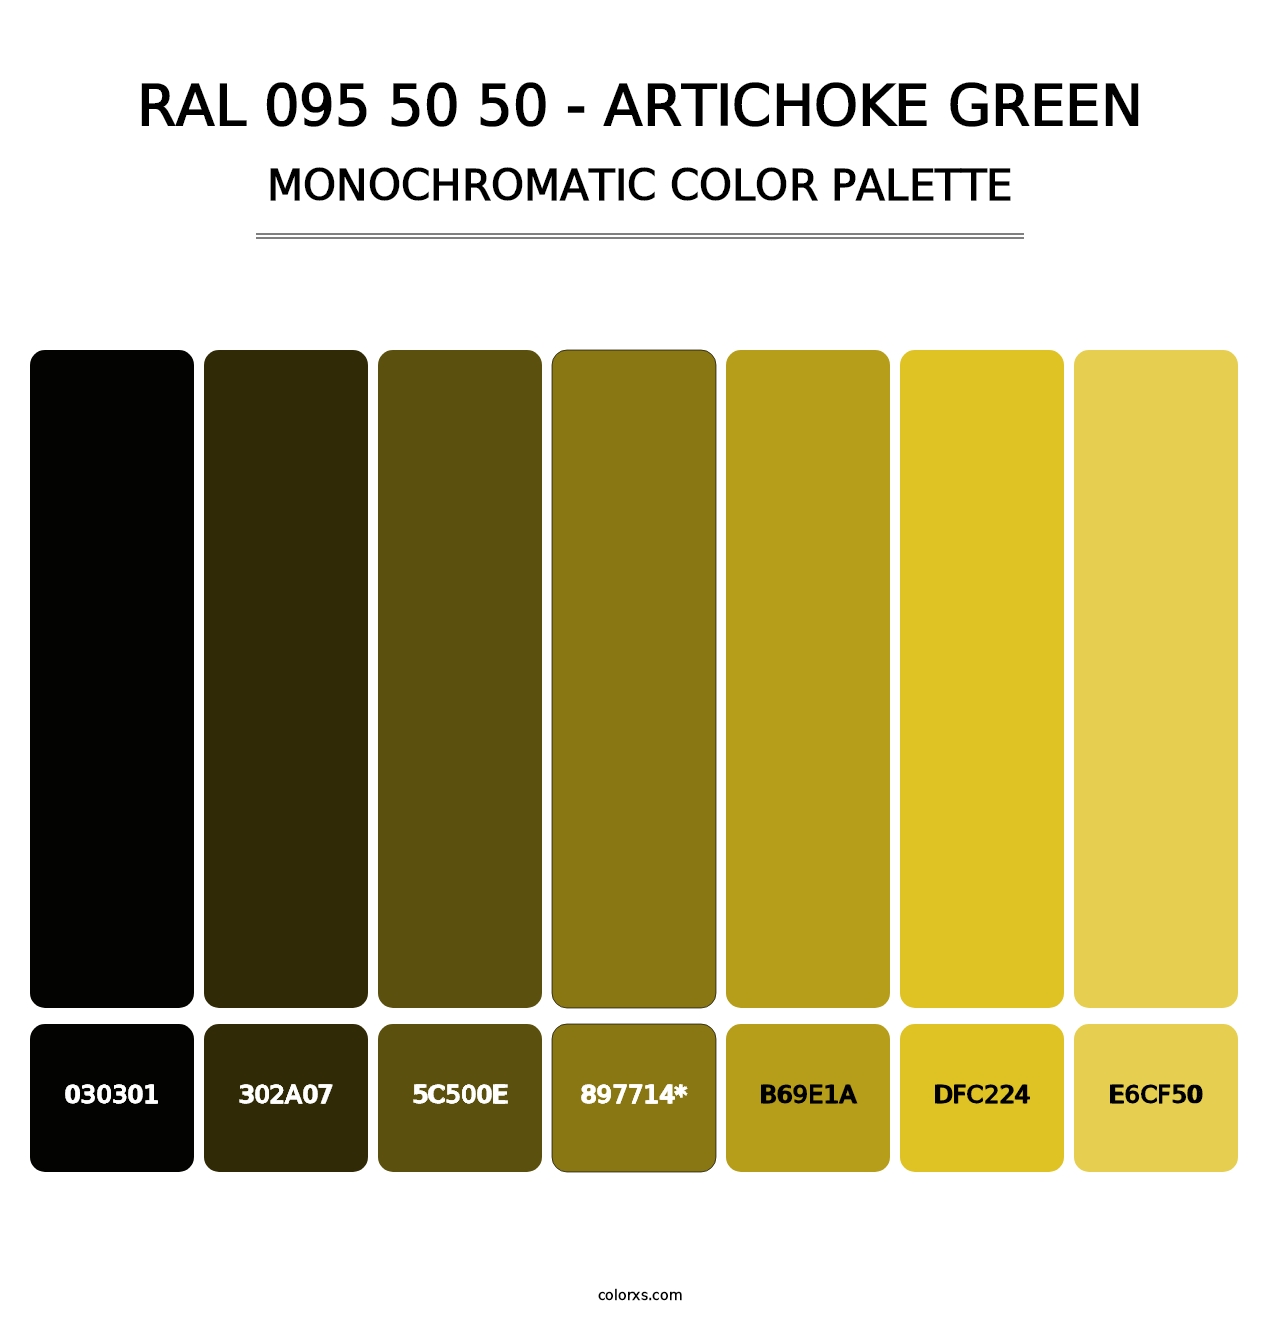 RAL 095 50 50 - Artichoke Green - Monochromatic Color Palette